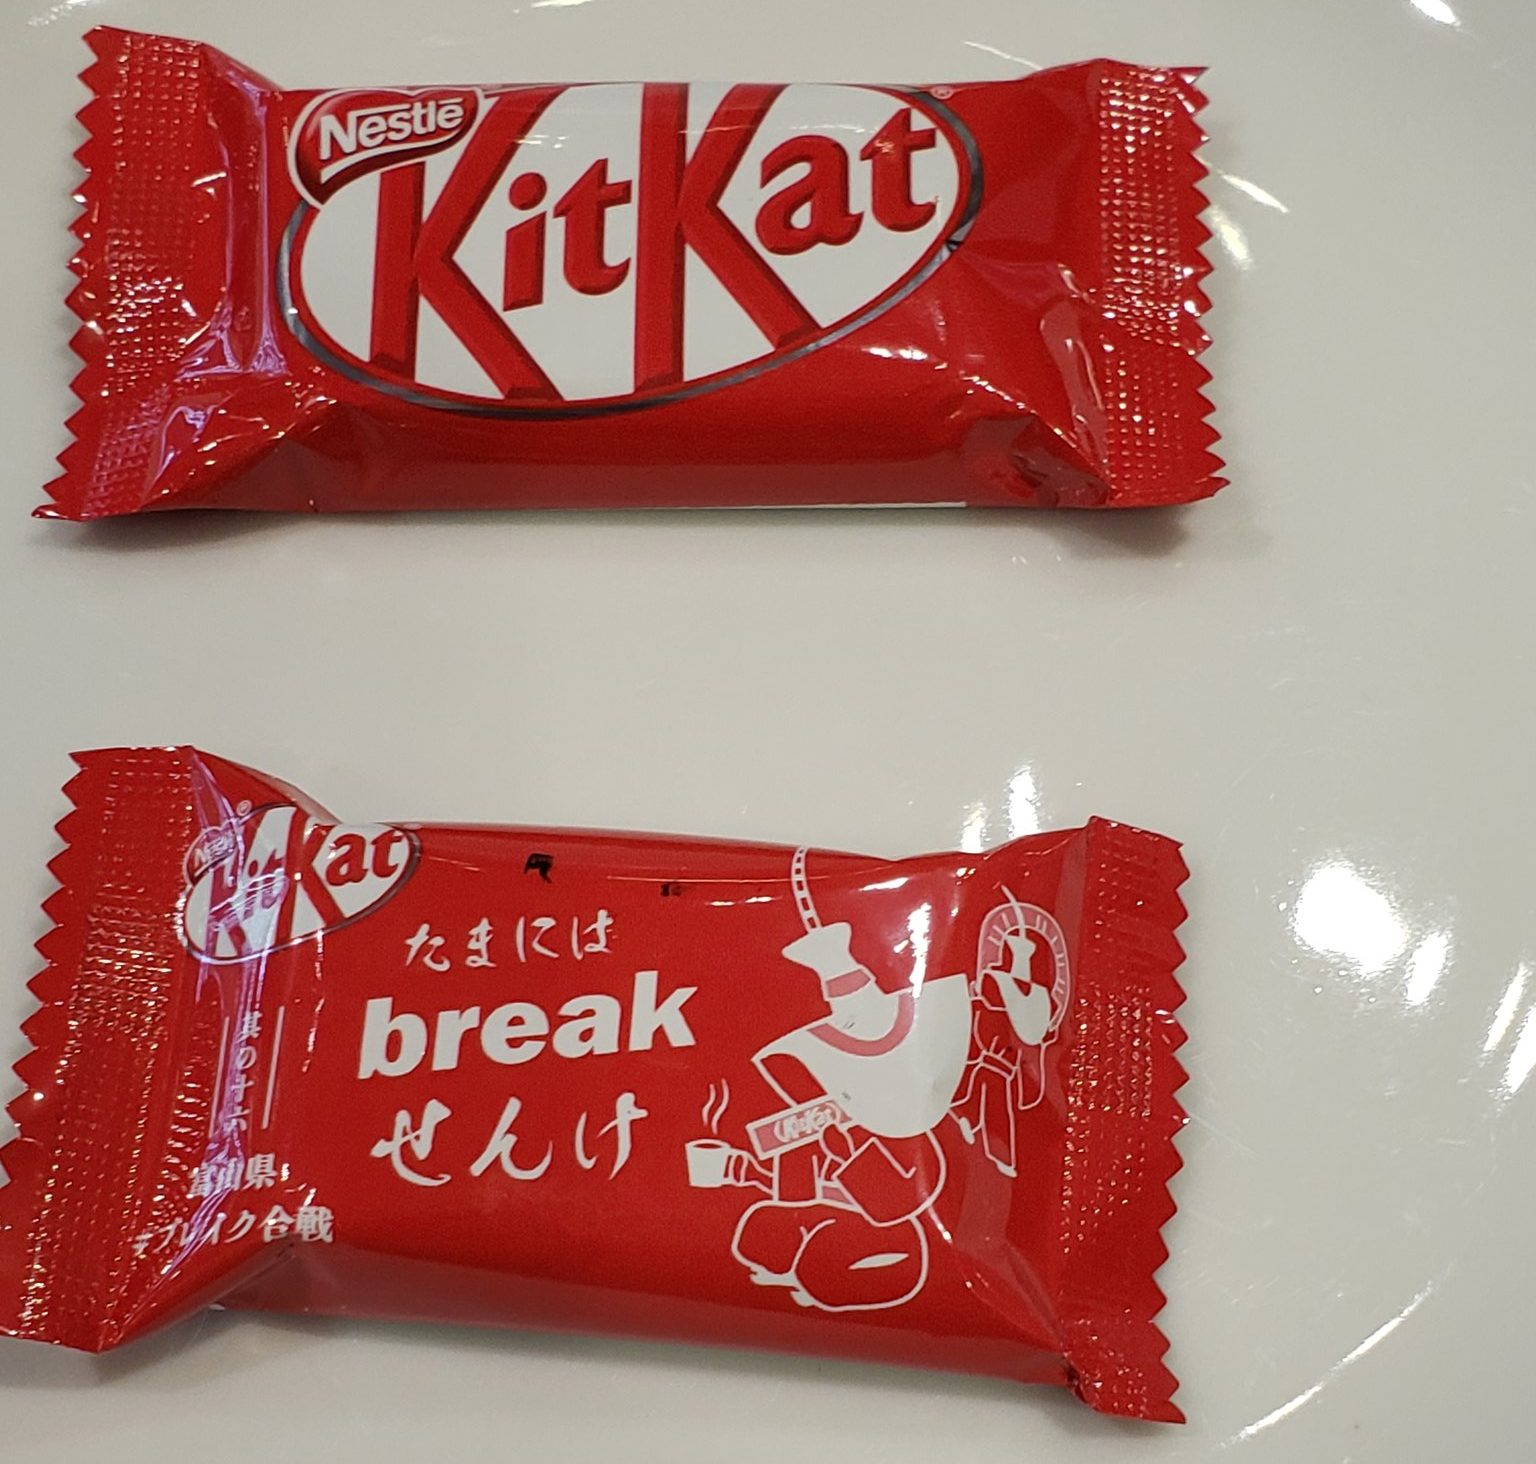 Japanese-KitKat-shrinkflation-Kit-Kat-Twitter-Nestle-Japan-chocolate-sweets-news-1-e1602944598584.jpg